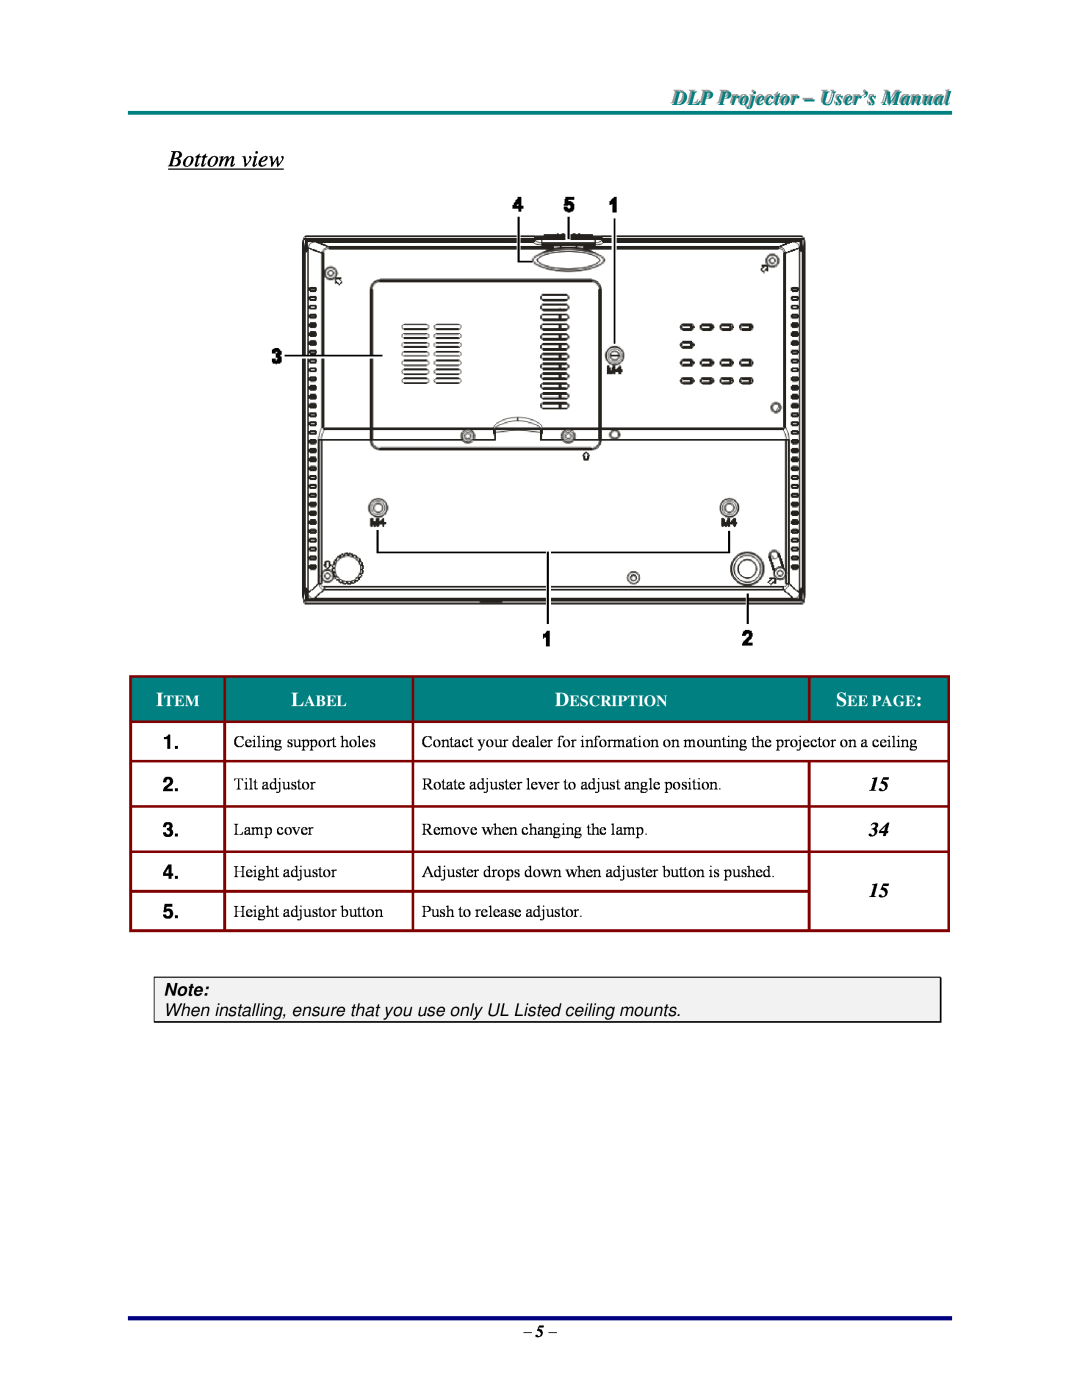 Vivitek D825MS, DP825MS, D820MS, D825MX manual Bottom view, DLP Projjecttor - User’s Manuall, Label, Description, See Page 